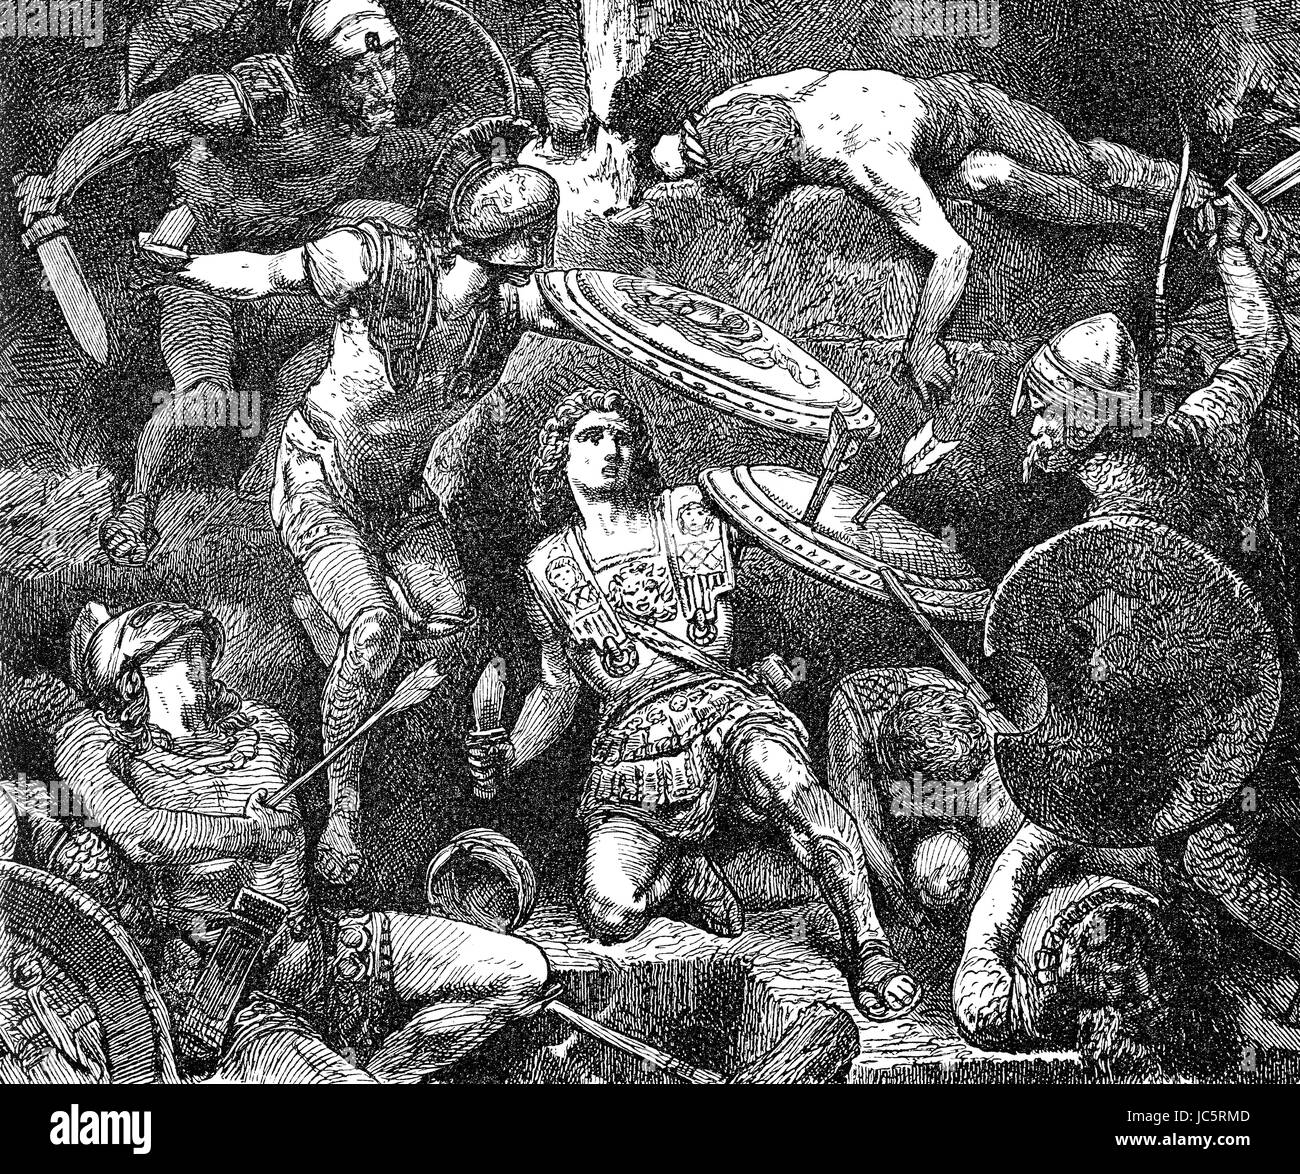 Die Schlacht von Hydaspes, gekämpft von Alexander der große 326 v. Chr. gegen König Porus des Königreiches Paurava Stockfoto